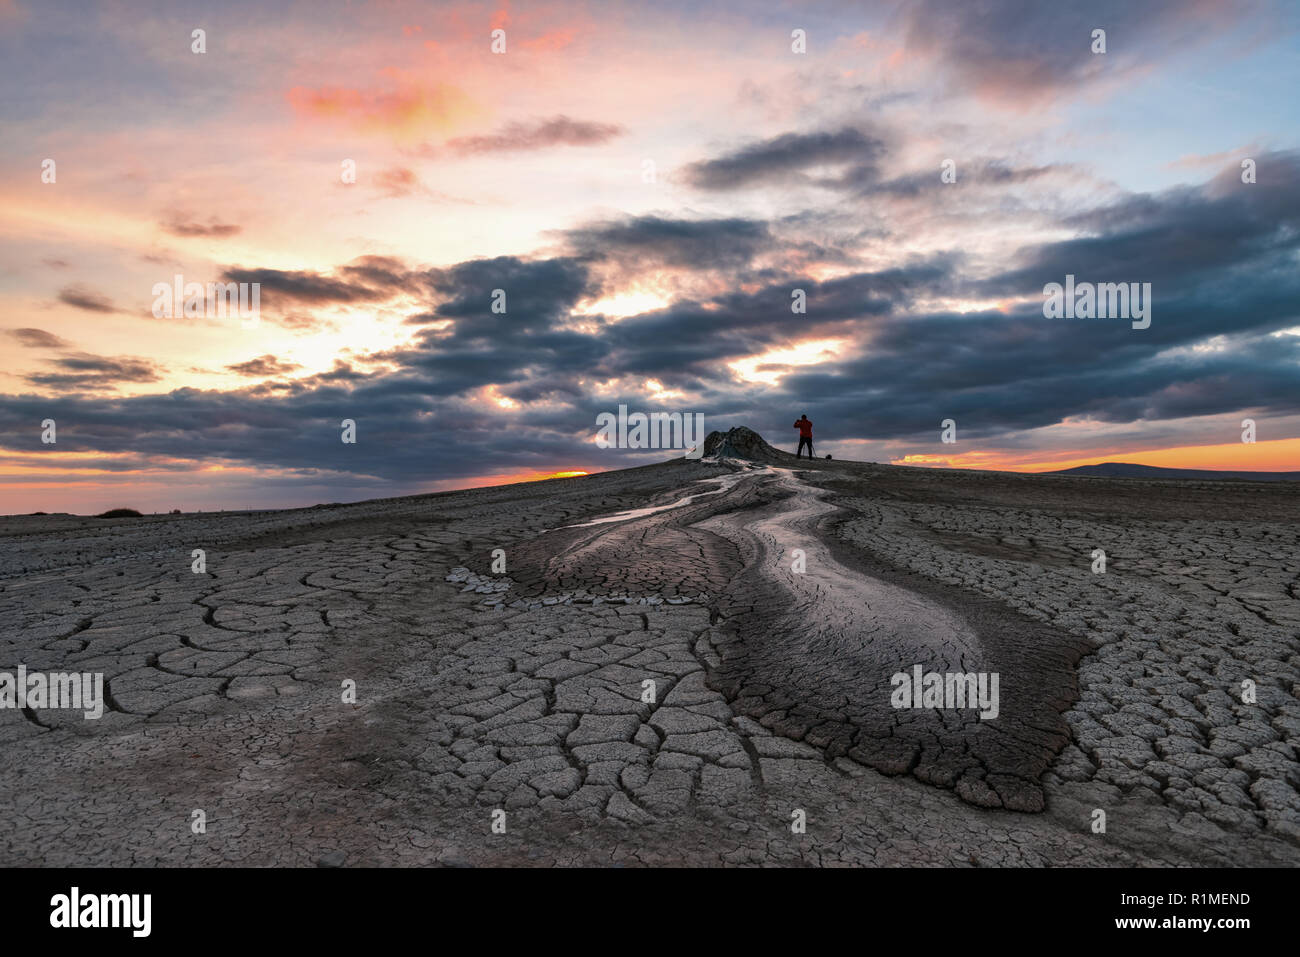 Mud volcanoes at sunset,  amazing natural phenomenon Stock Photo